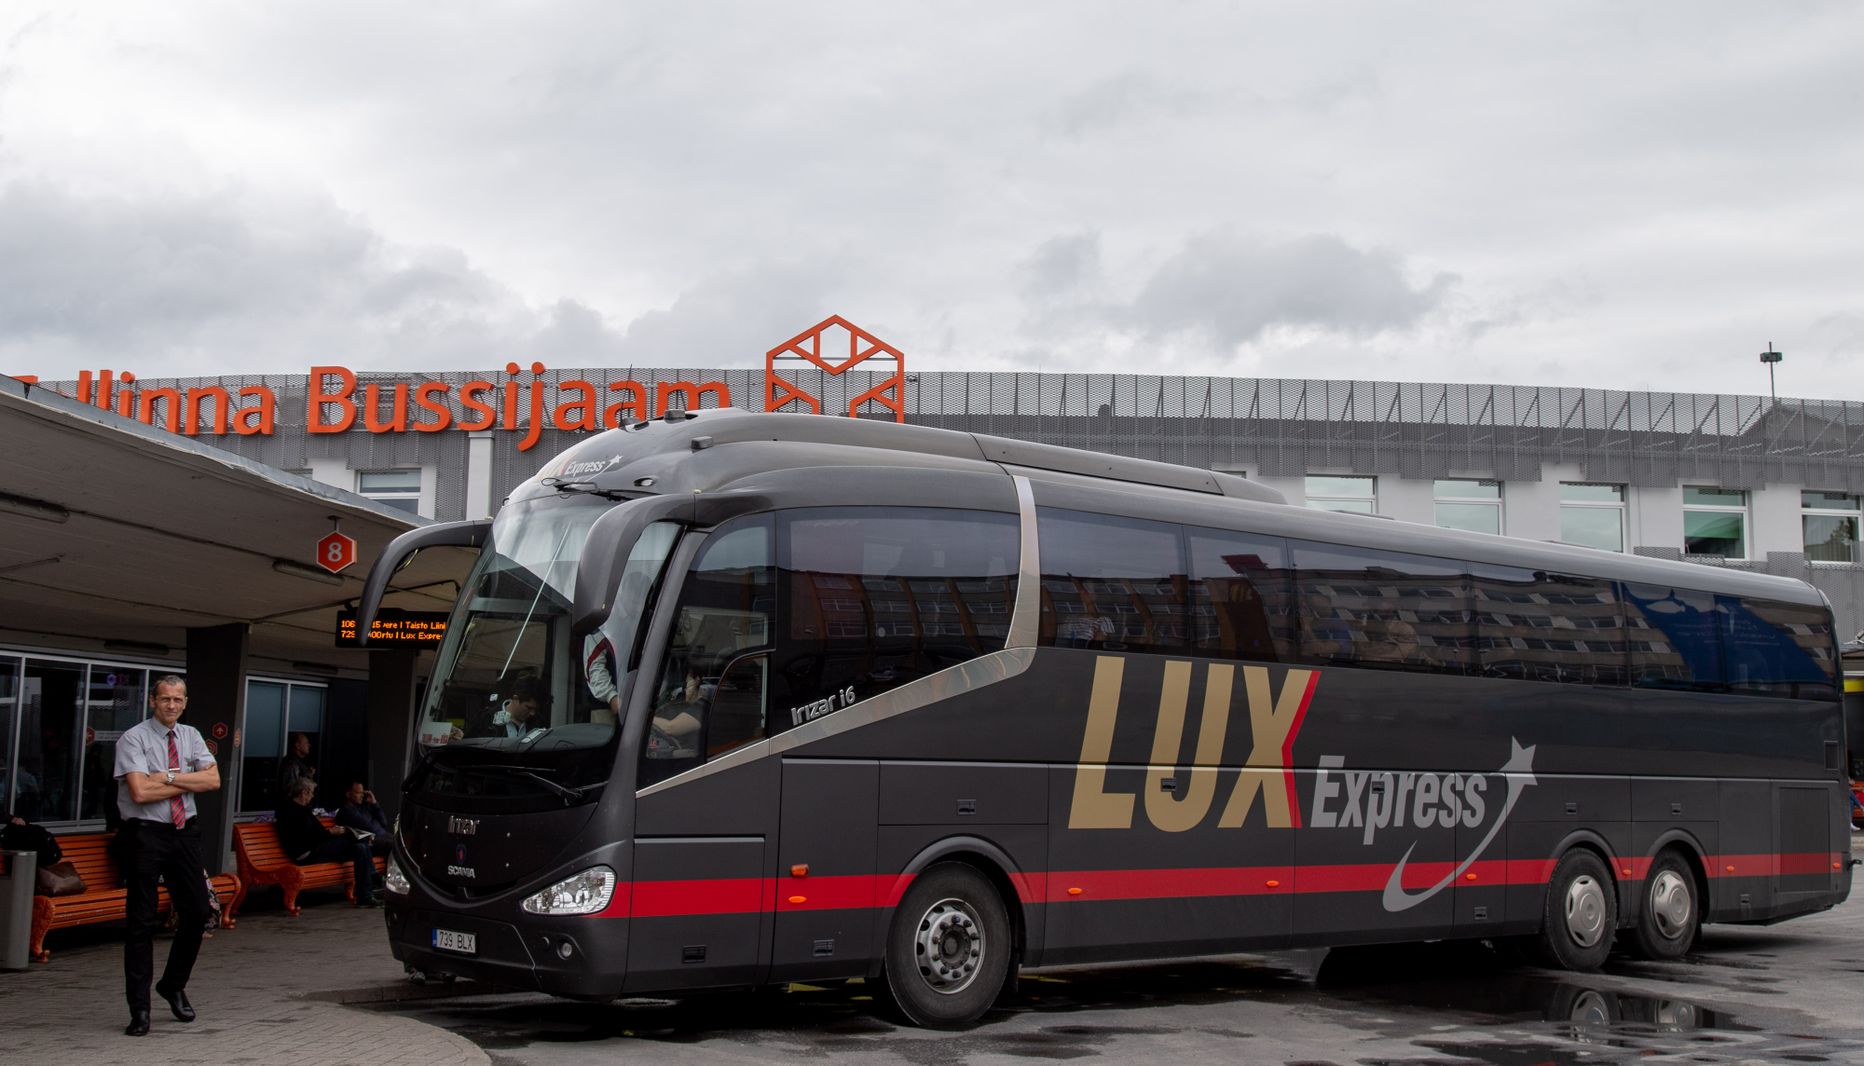 Lux Express, Tallinna bussijaam.